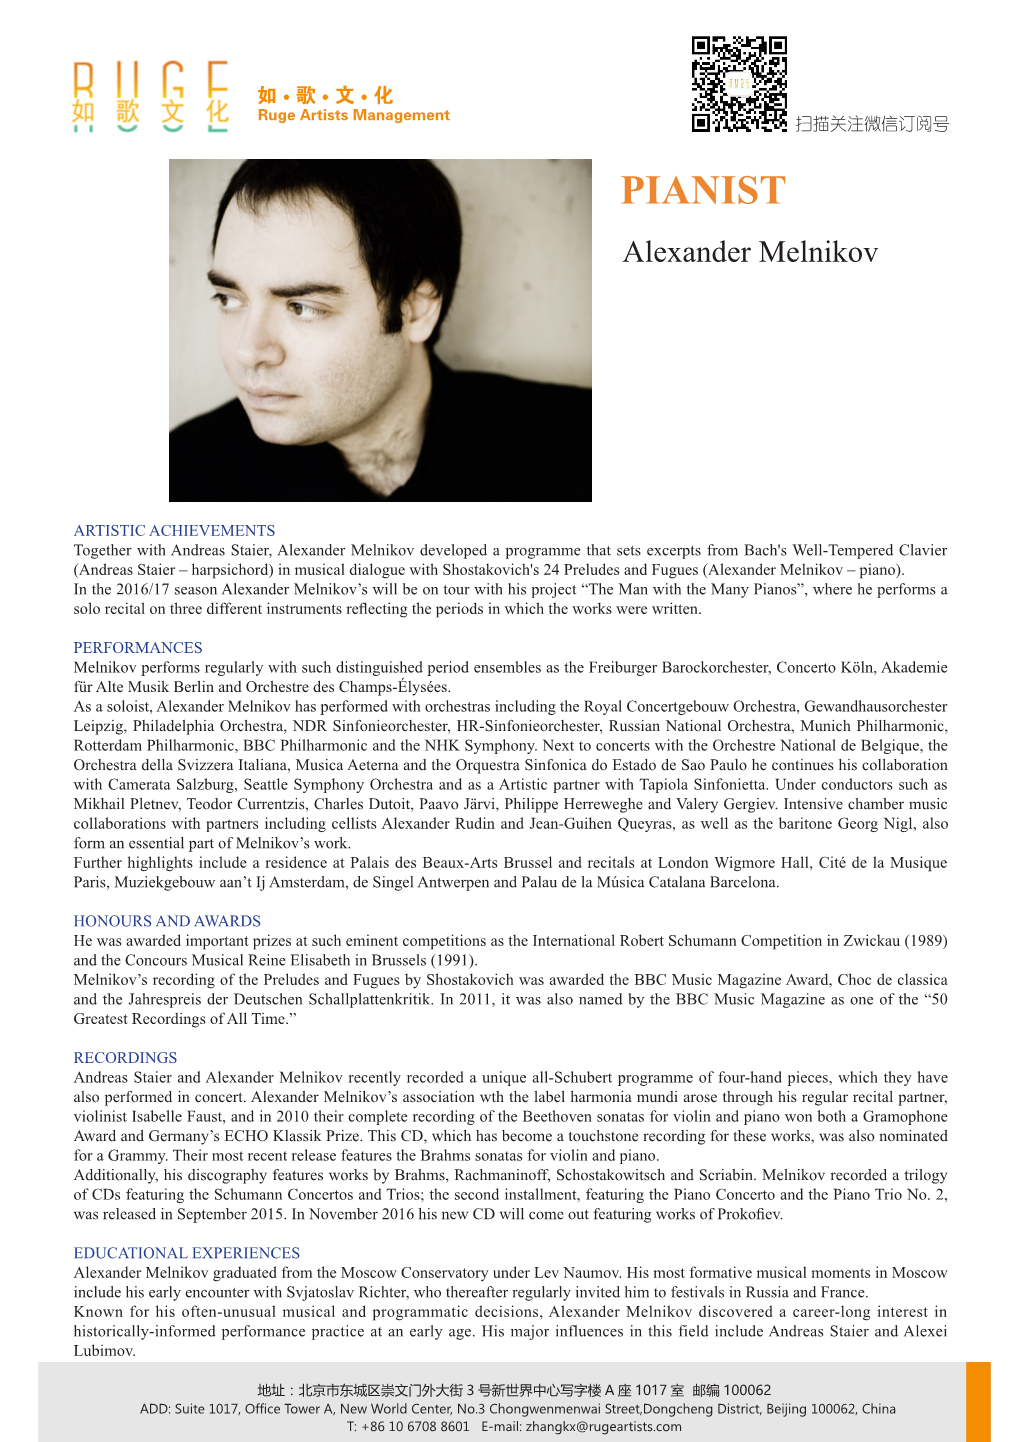 PIANIST Alexander Melnikov